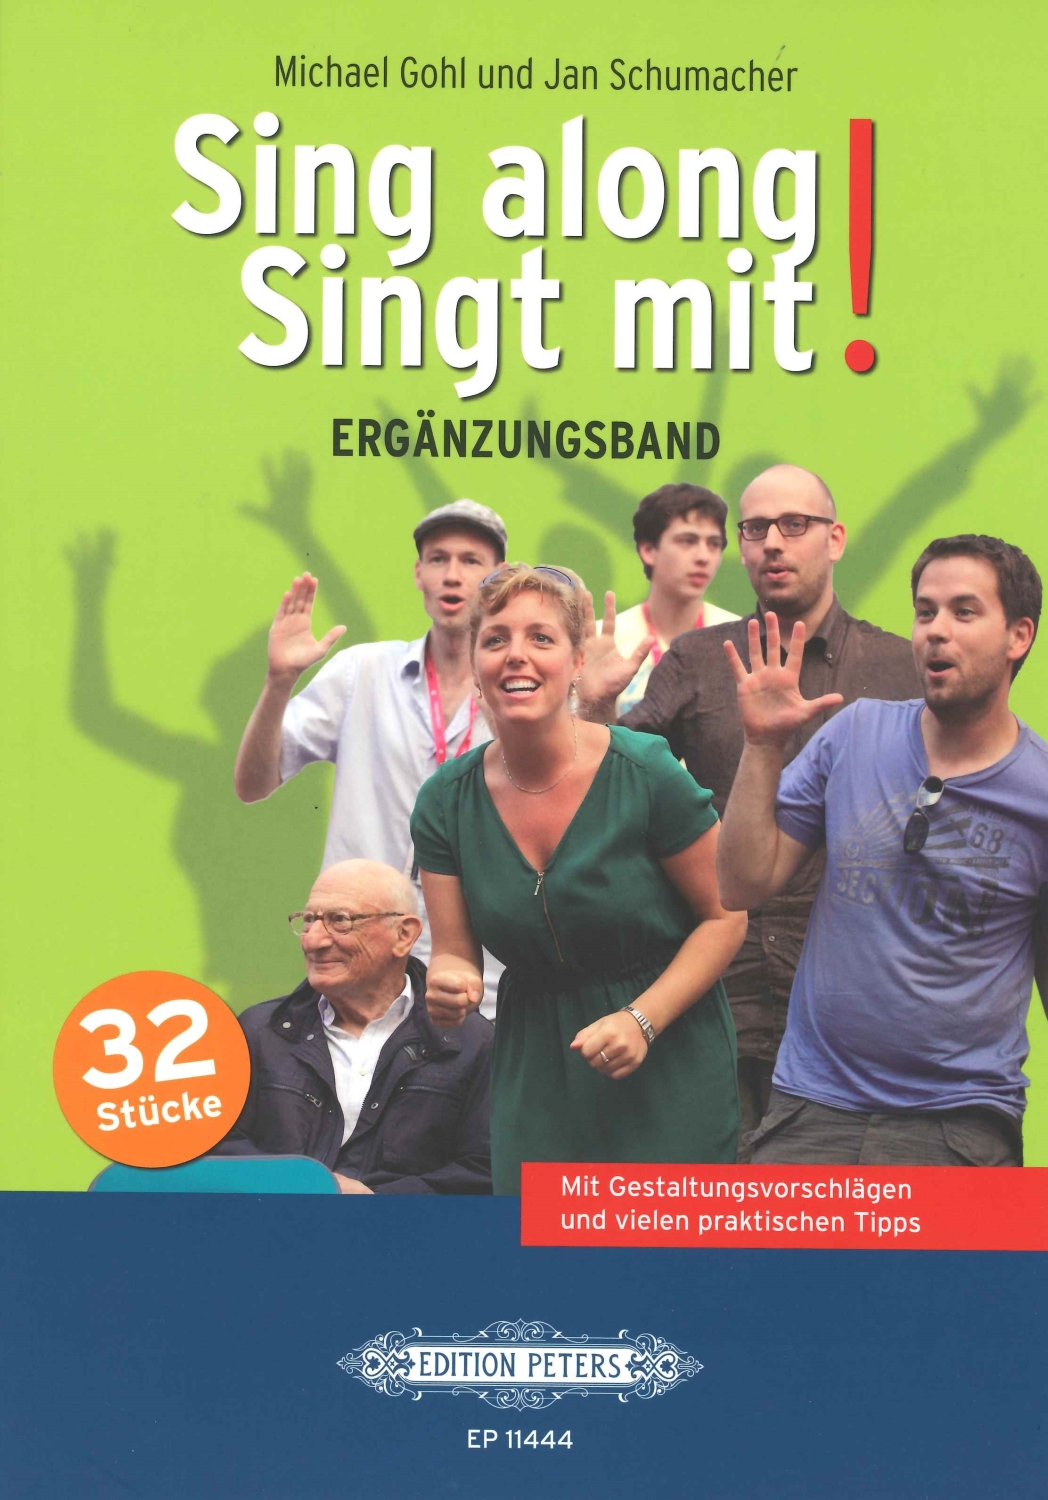 gohl-schumacher-sing-along-singt-mit-gemch-_ergaen_0001.JPG